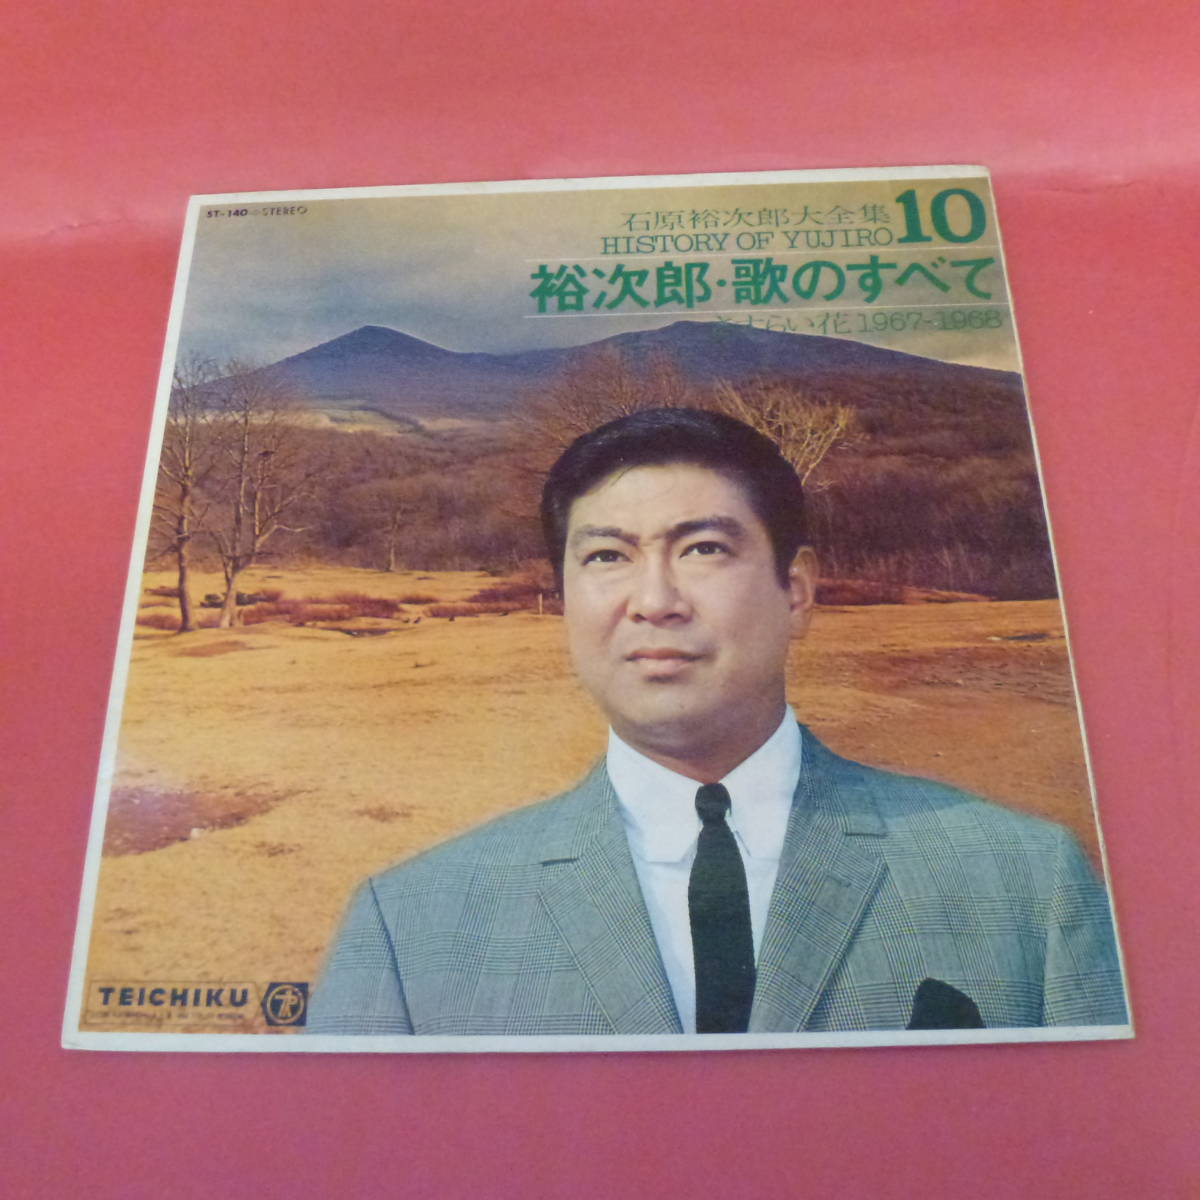 石原裕次郎大全集 レコード(10枚入り) - レコード